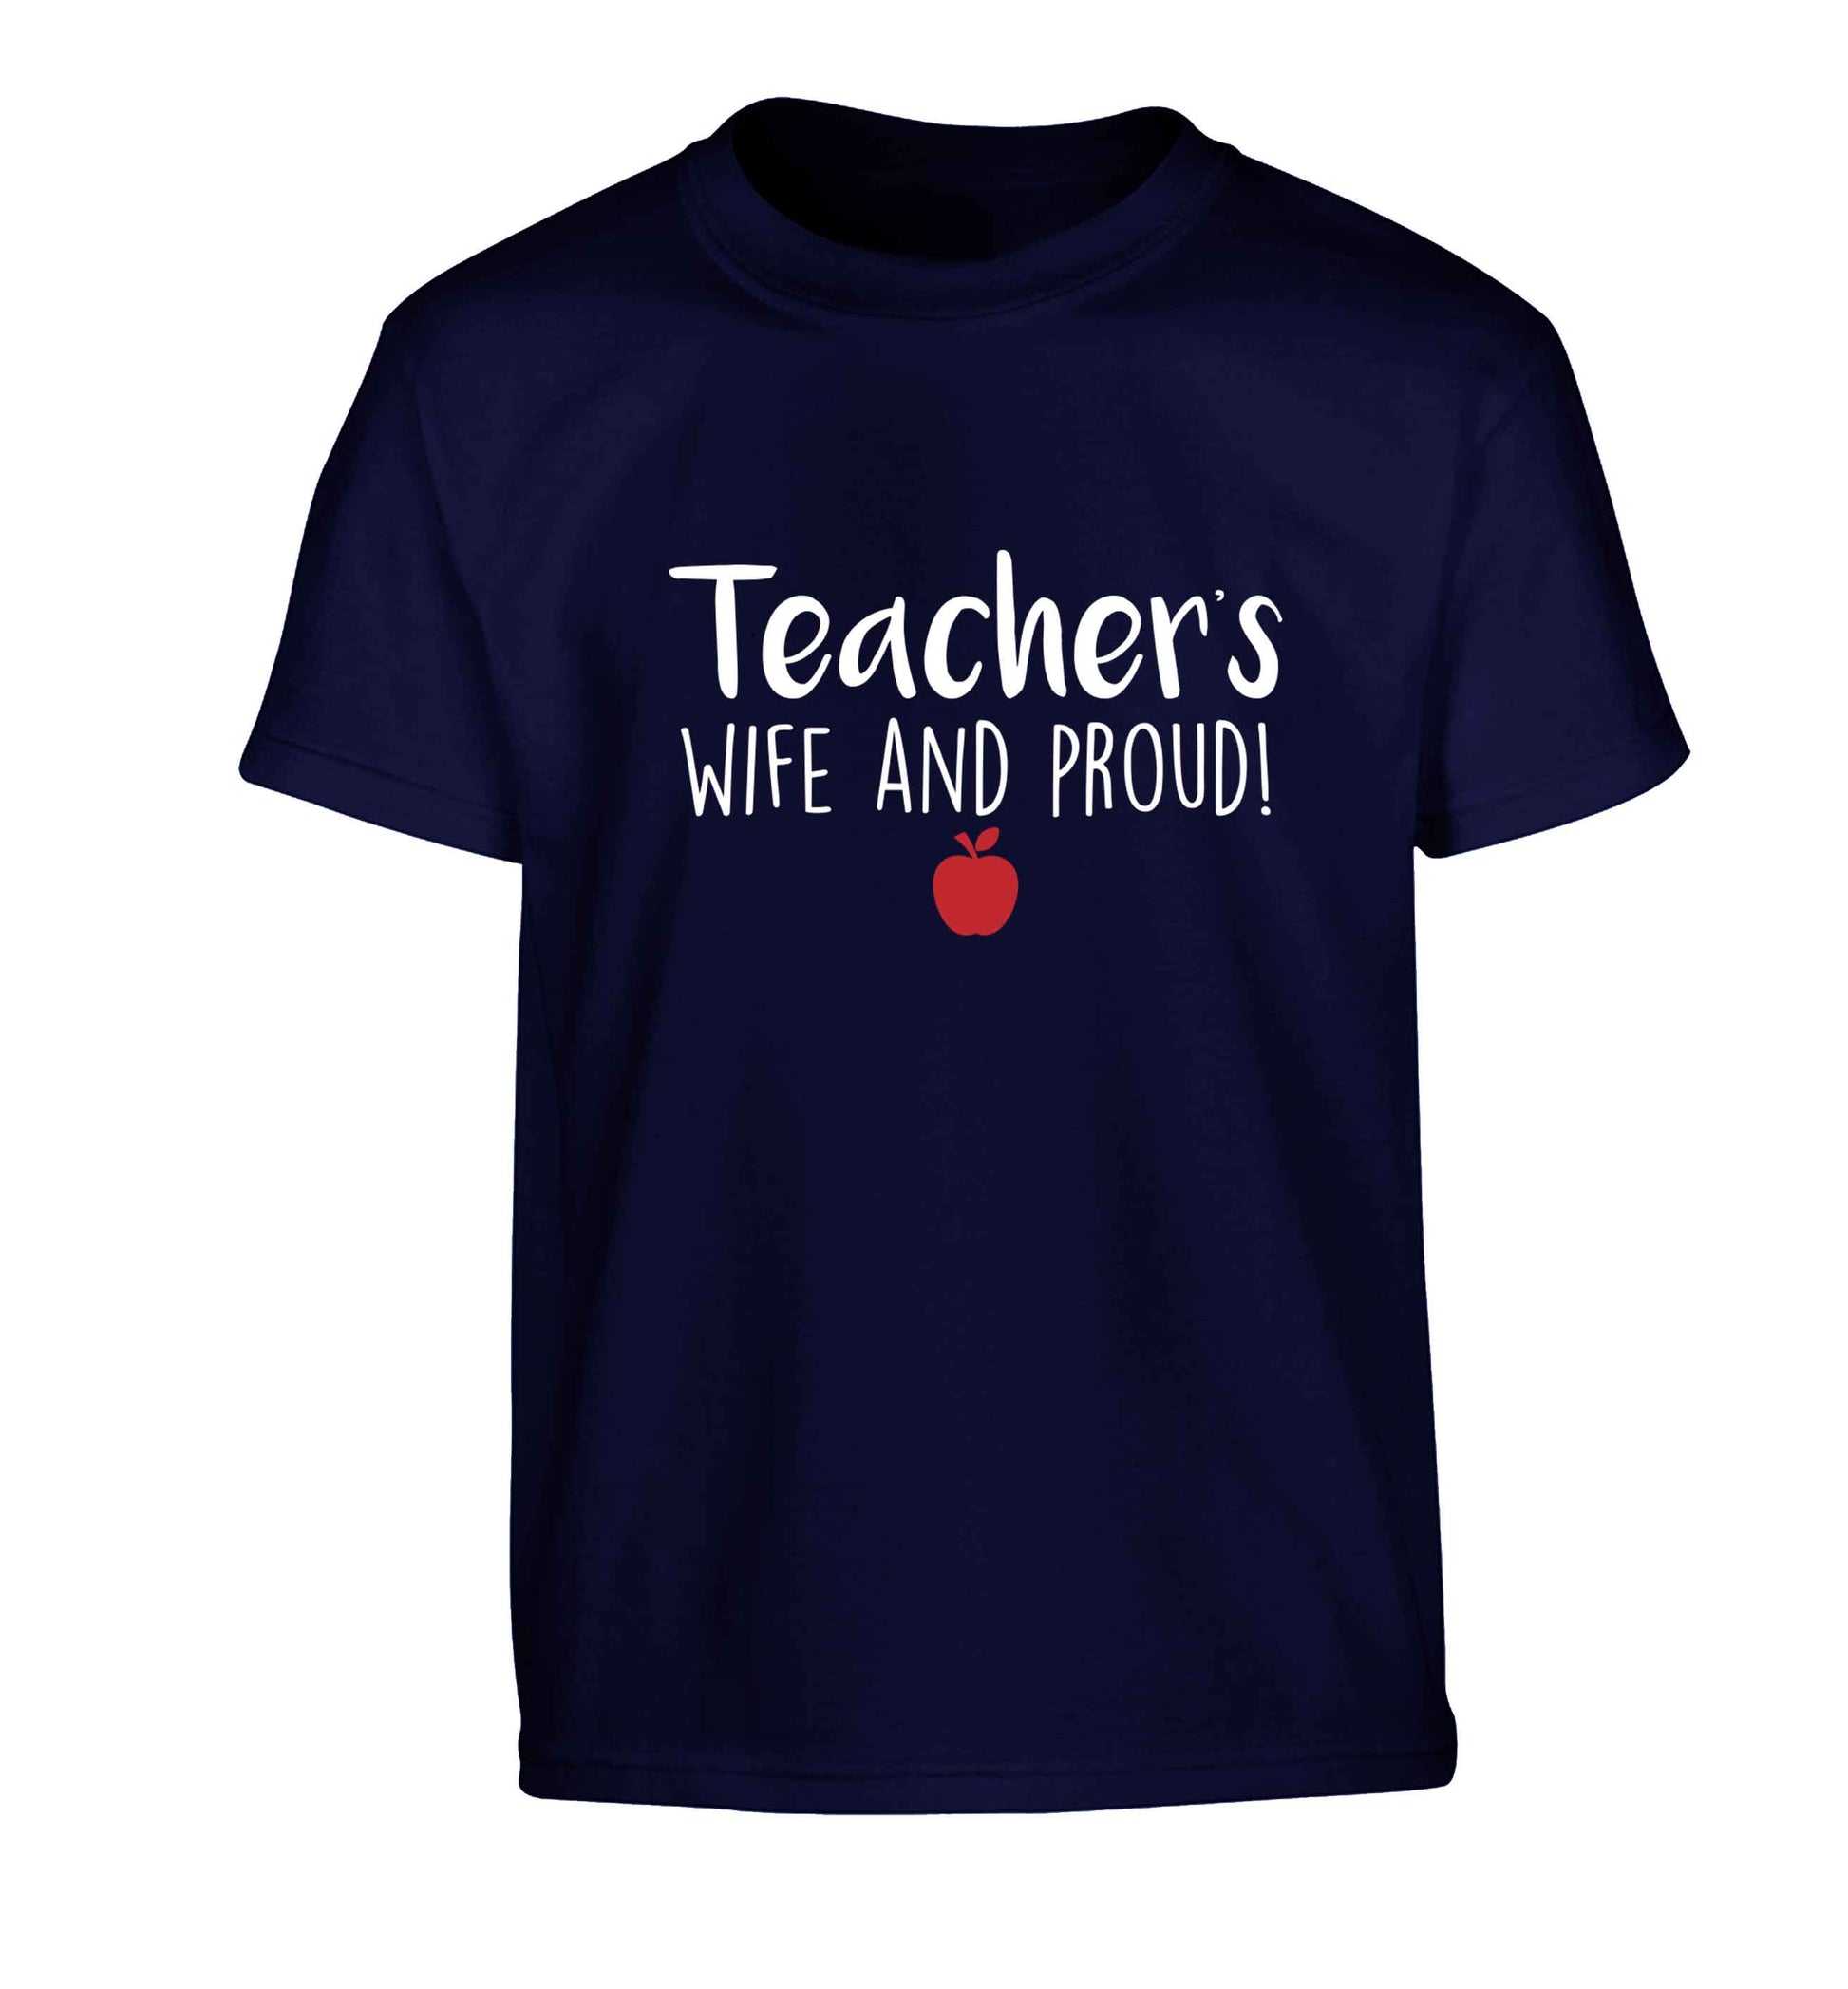 Teachers wife and proud Children's navy Tshirt 12-13 Years